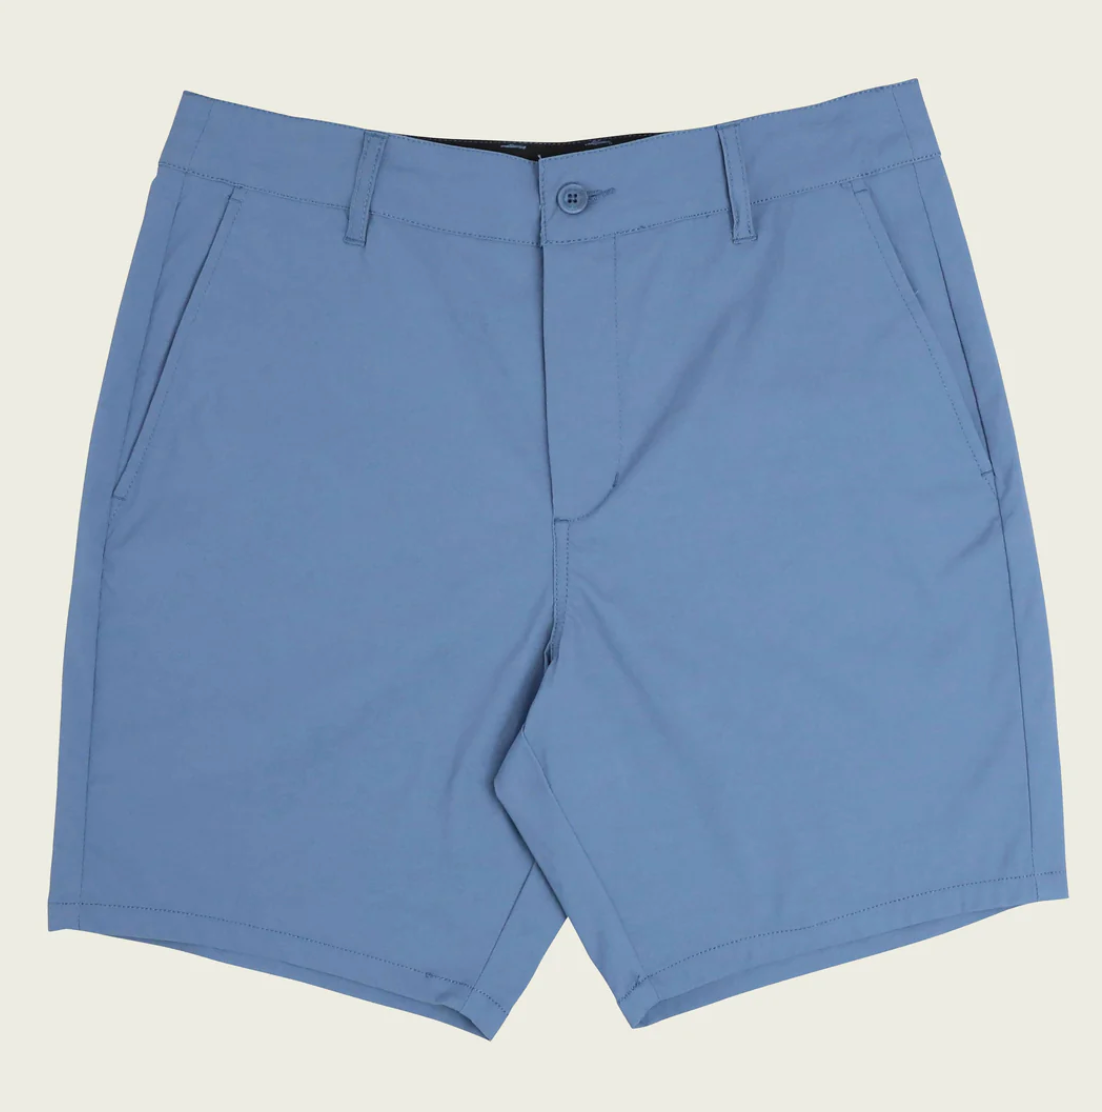 Marsh Prime Copen Blue Shorts